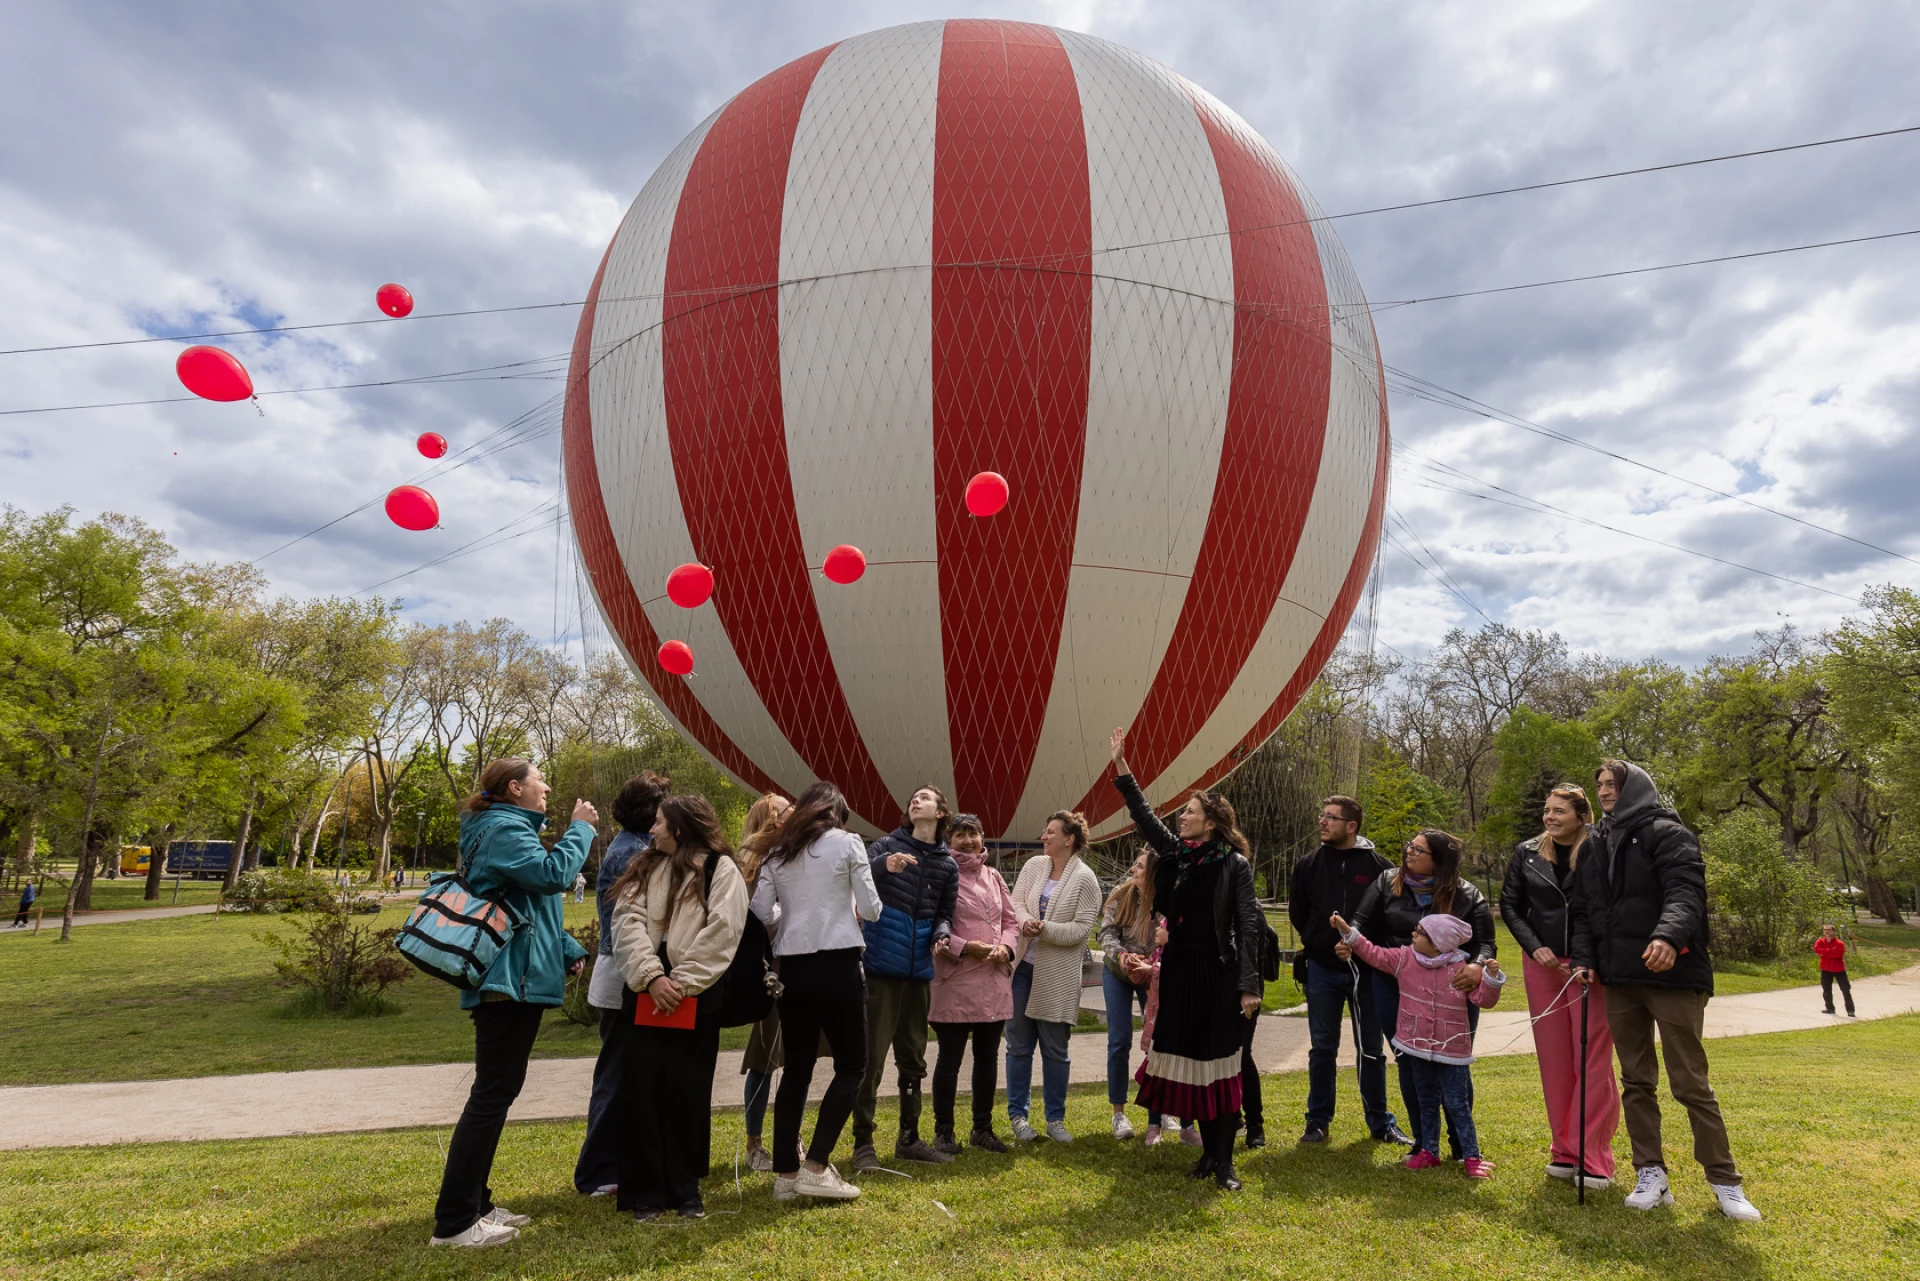 Ingyenes ballonozással búcsúzhatnak a kórháztól a Bethesdában gyógyuló gyermekek